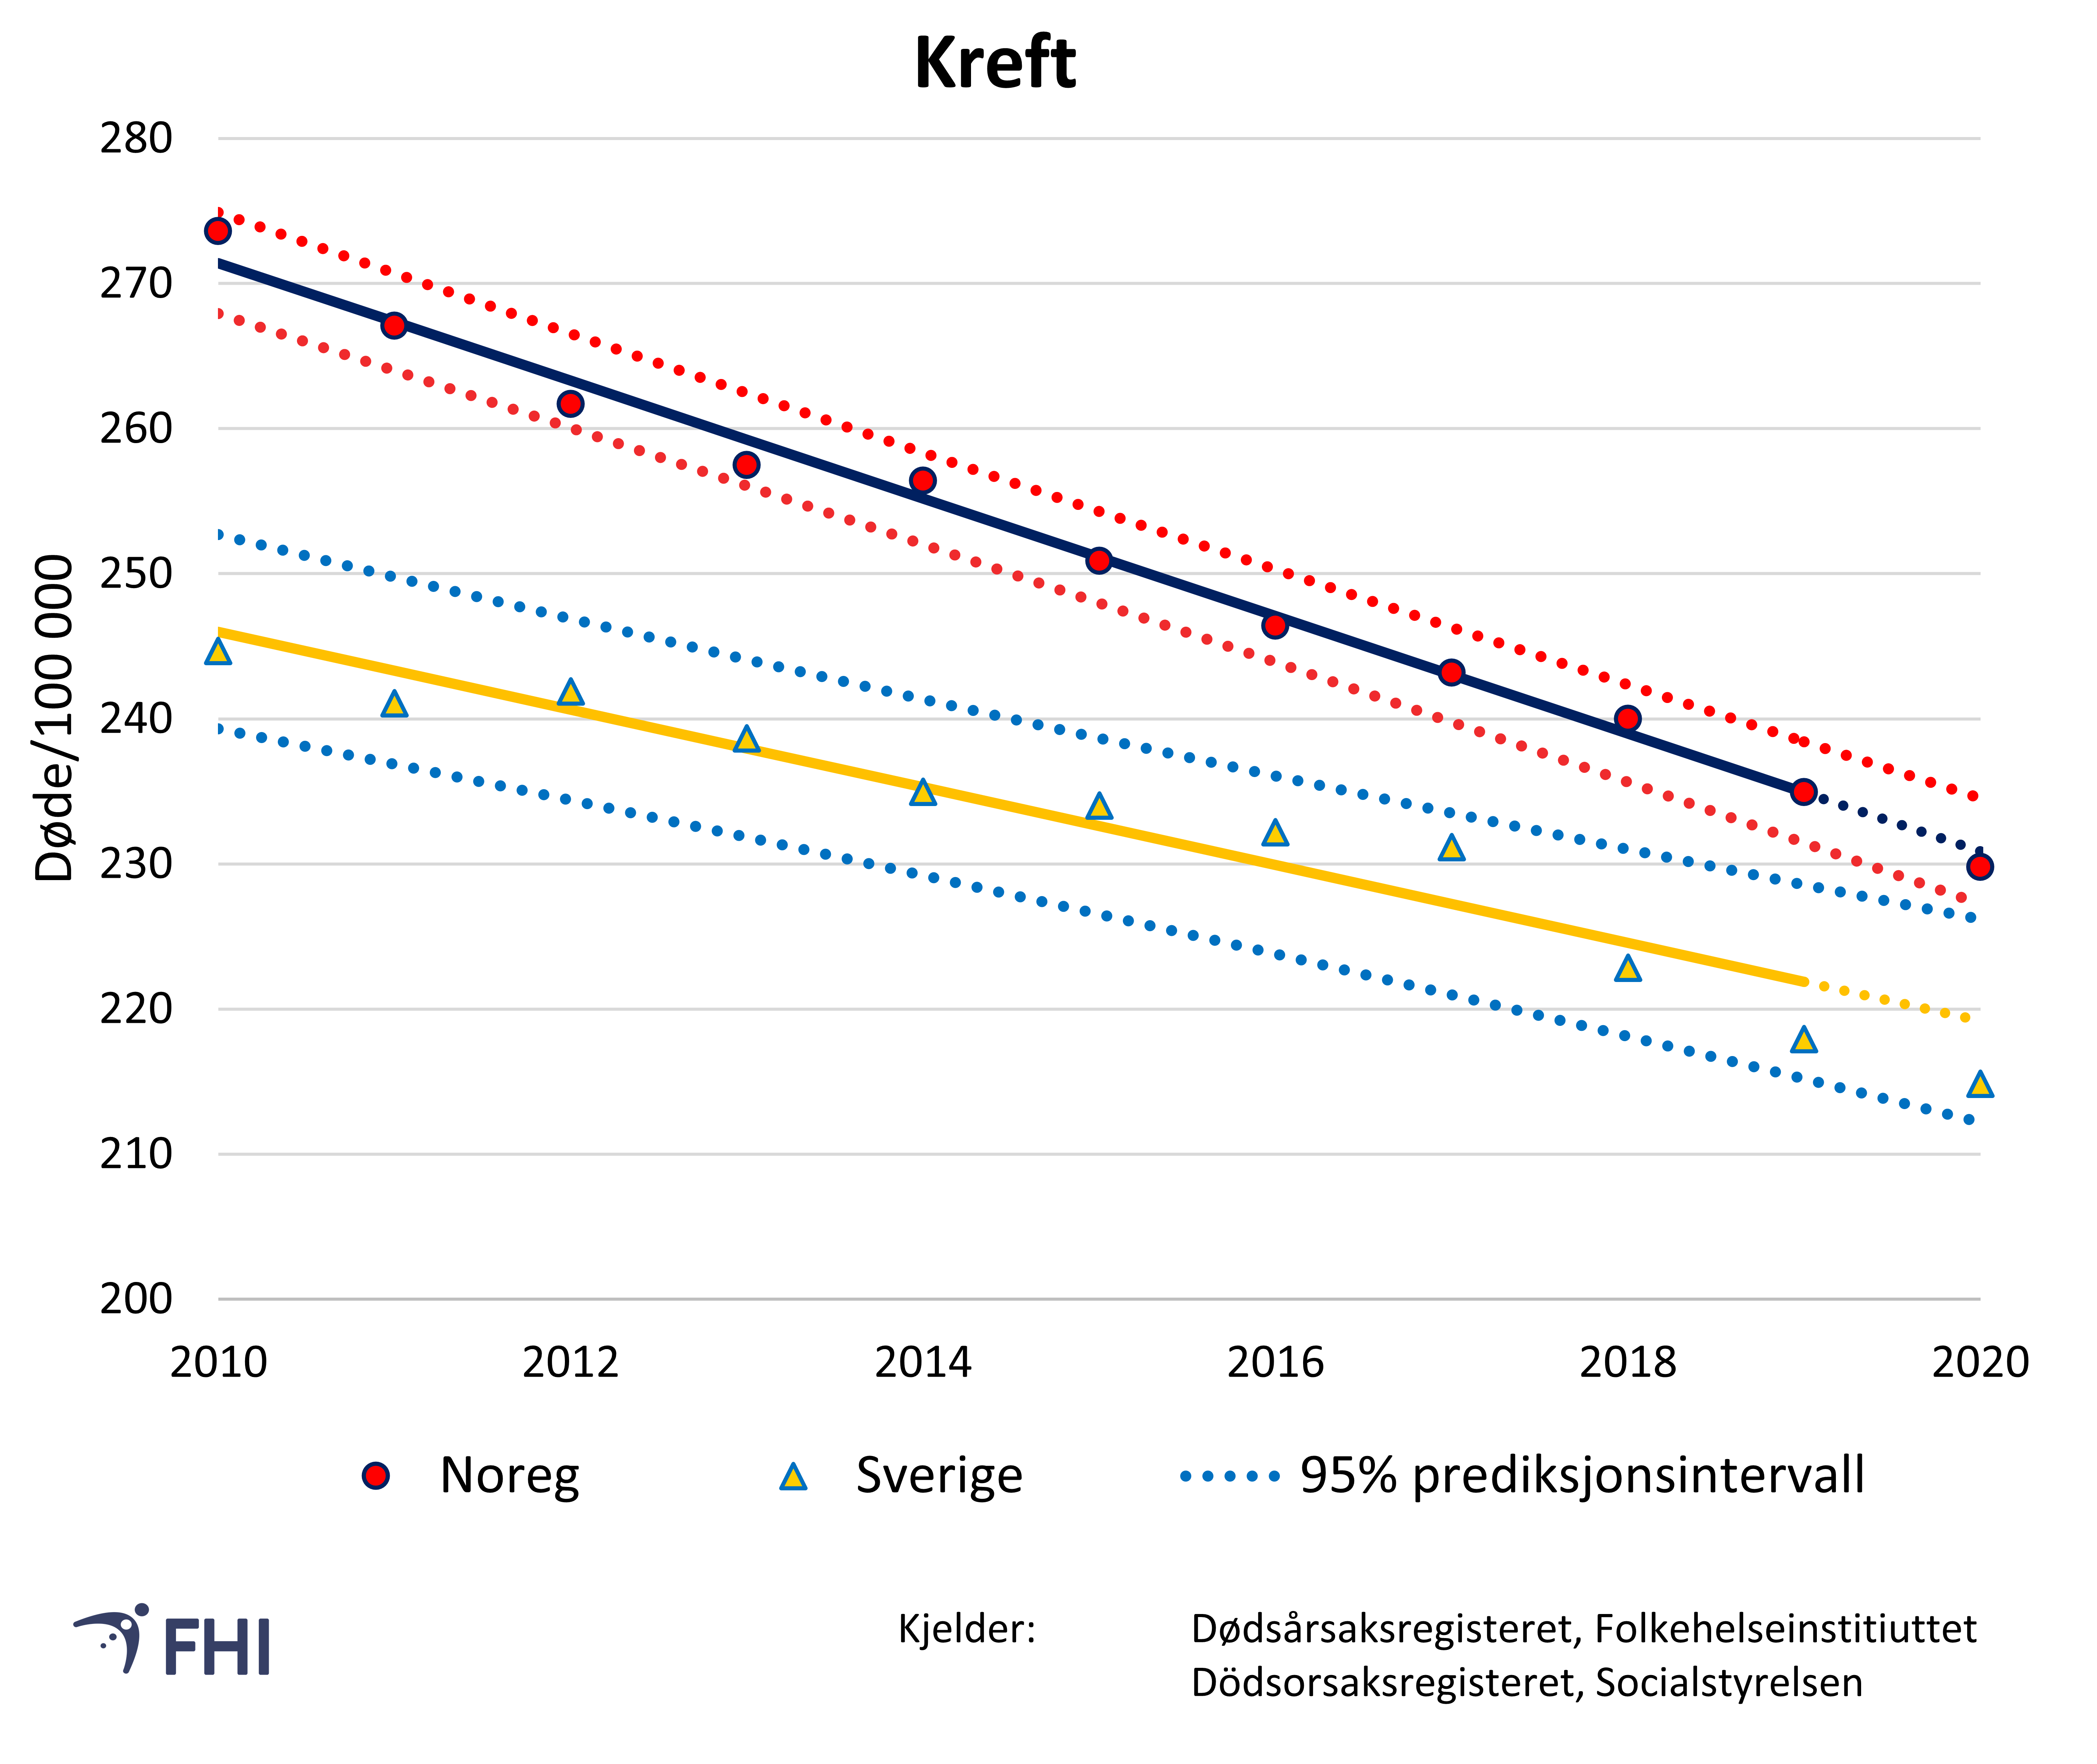 Figur 3: Aldersstandardiserte dødsratar for kreft i Noreg og Sverige mellom 2010 og 2020. Verdiar mellom 95% prediksjonsintervall viser forventa variasjon basert på trenden mellom 2010 og 2019. . 